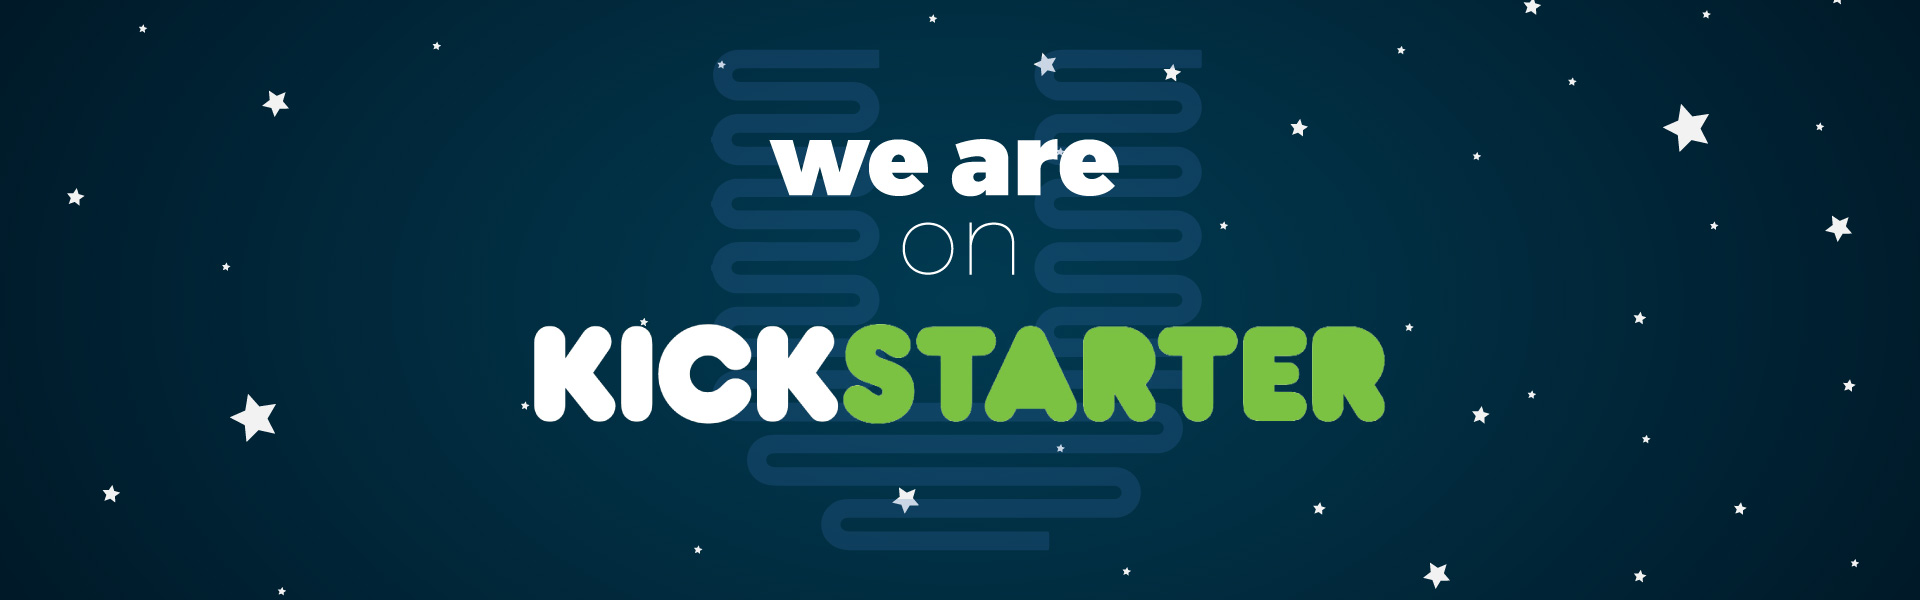 we_are_on_kickstarter